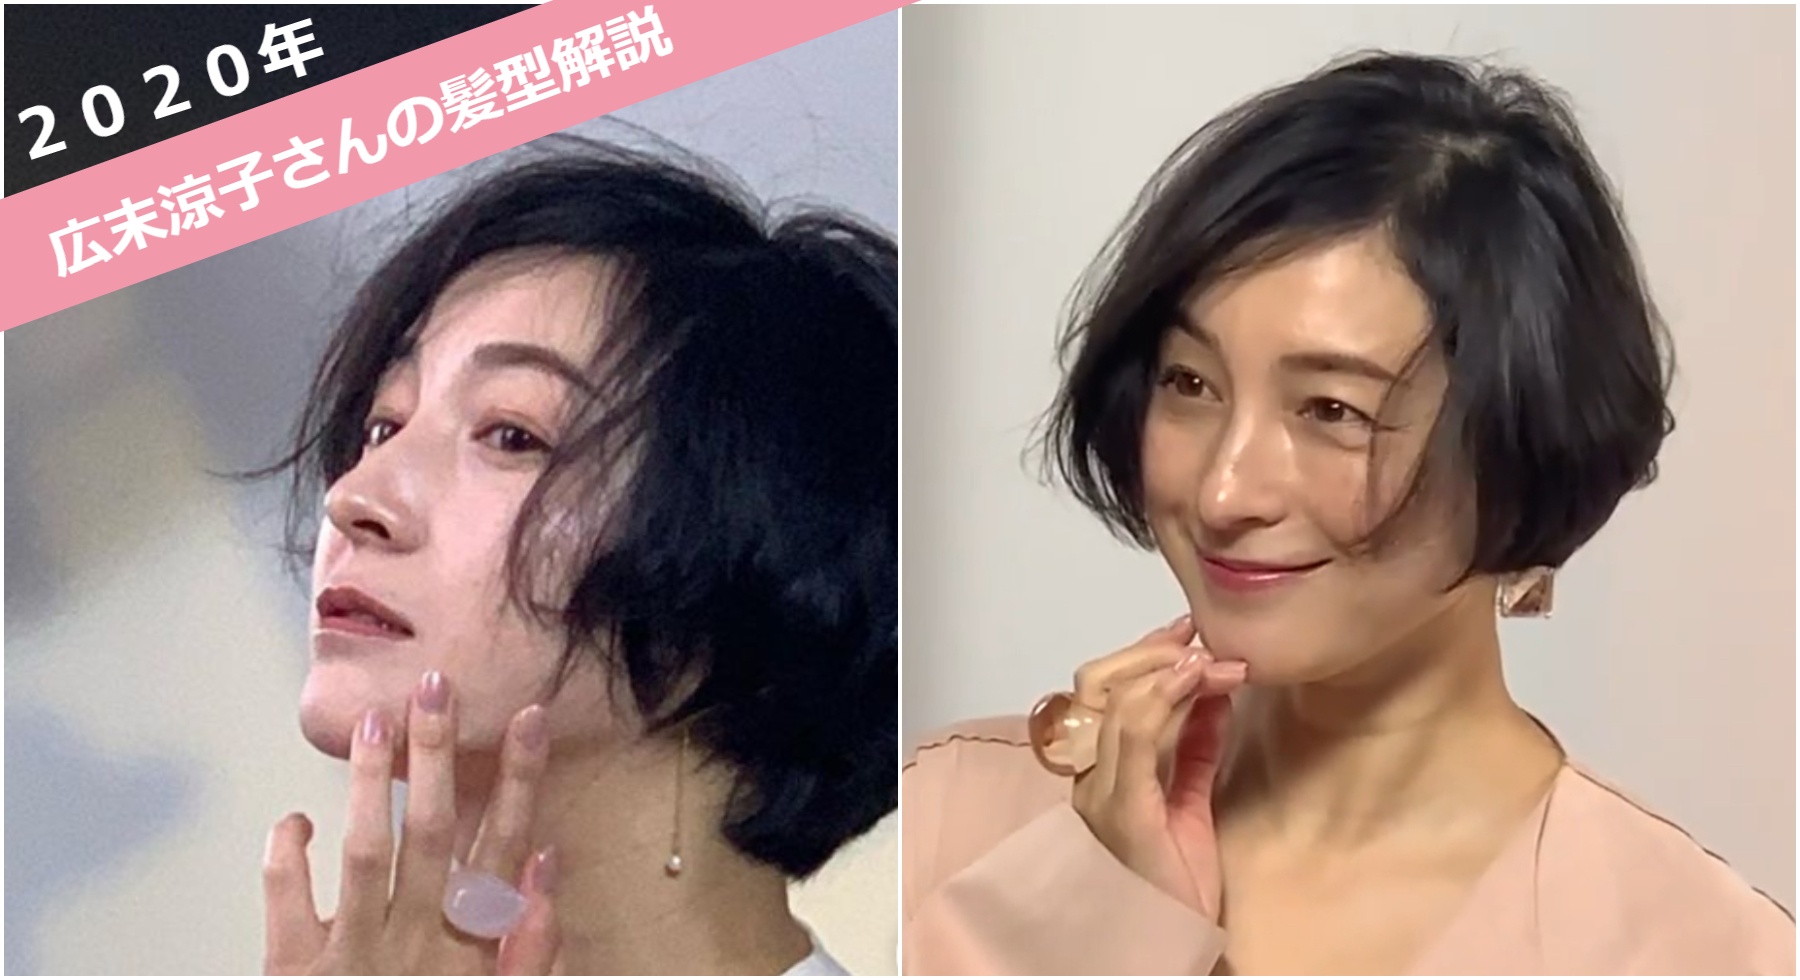 美容師解説 年 広末涼子さんの歴代の髪型と最新のショートオーダー法について